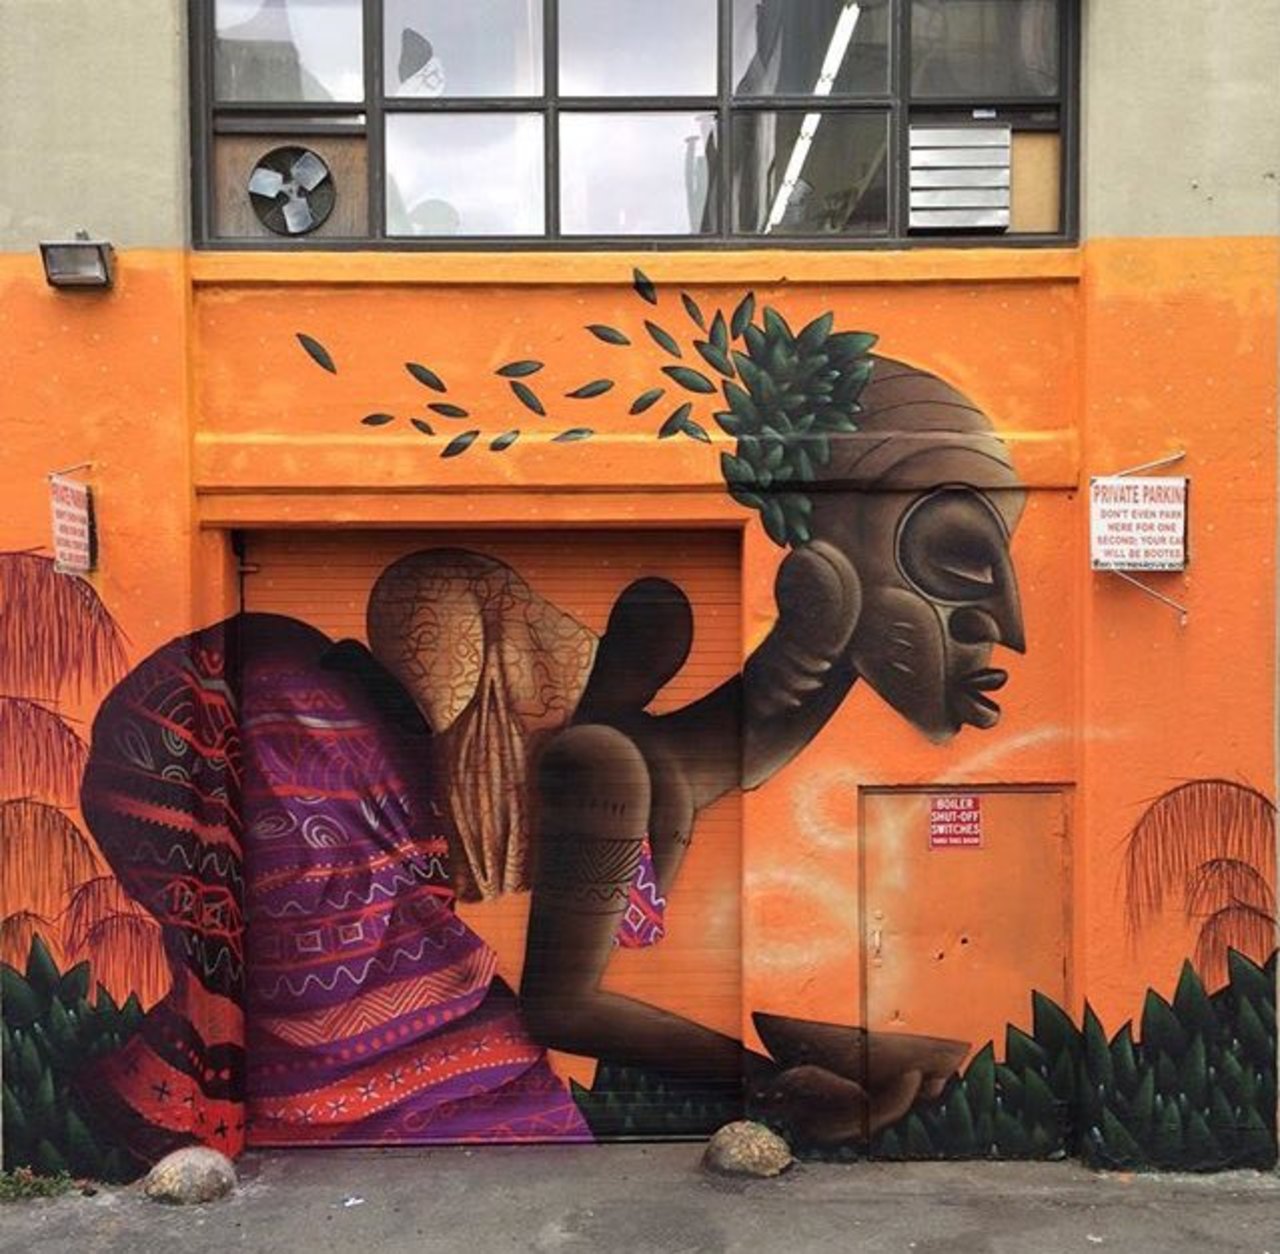 RT @PB_Prathamesh_B: New Street Art by Alexandre Keto in NYC 

#art #graffiti #mural #streetart https://t.co/ggHpMq8ygk